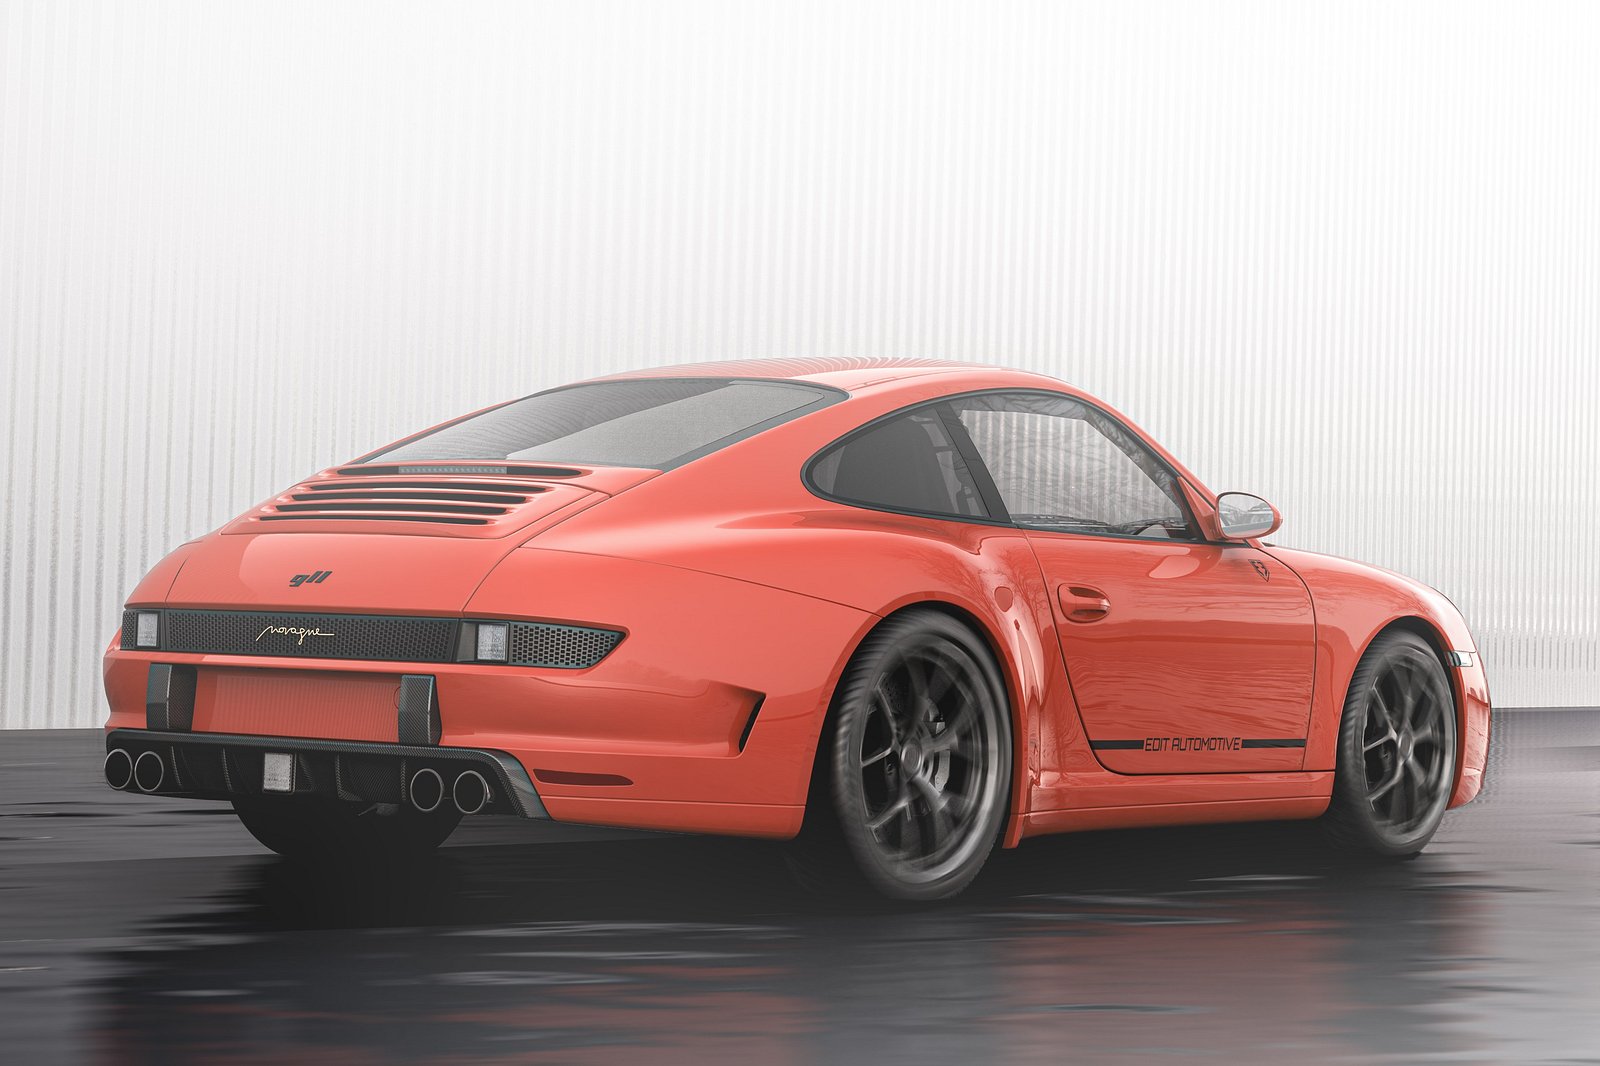 997 Porsche 911 Gets Restomod Treatment With 930-Inspired Bodywork